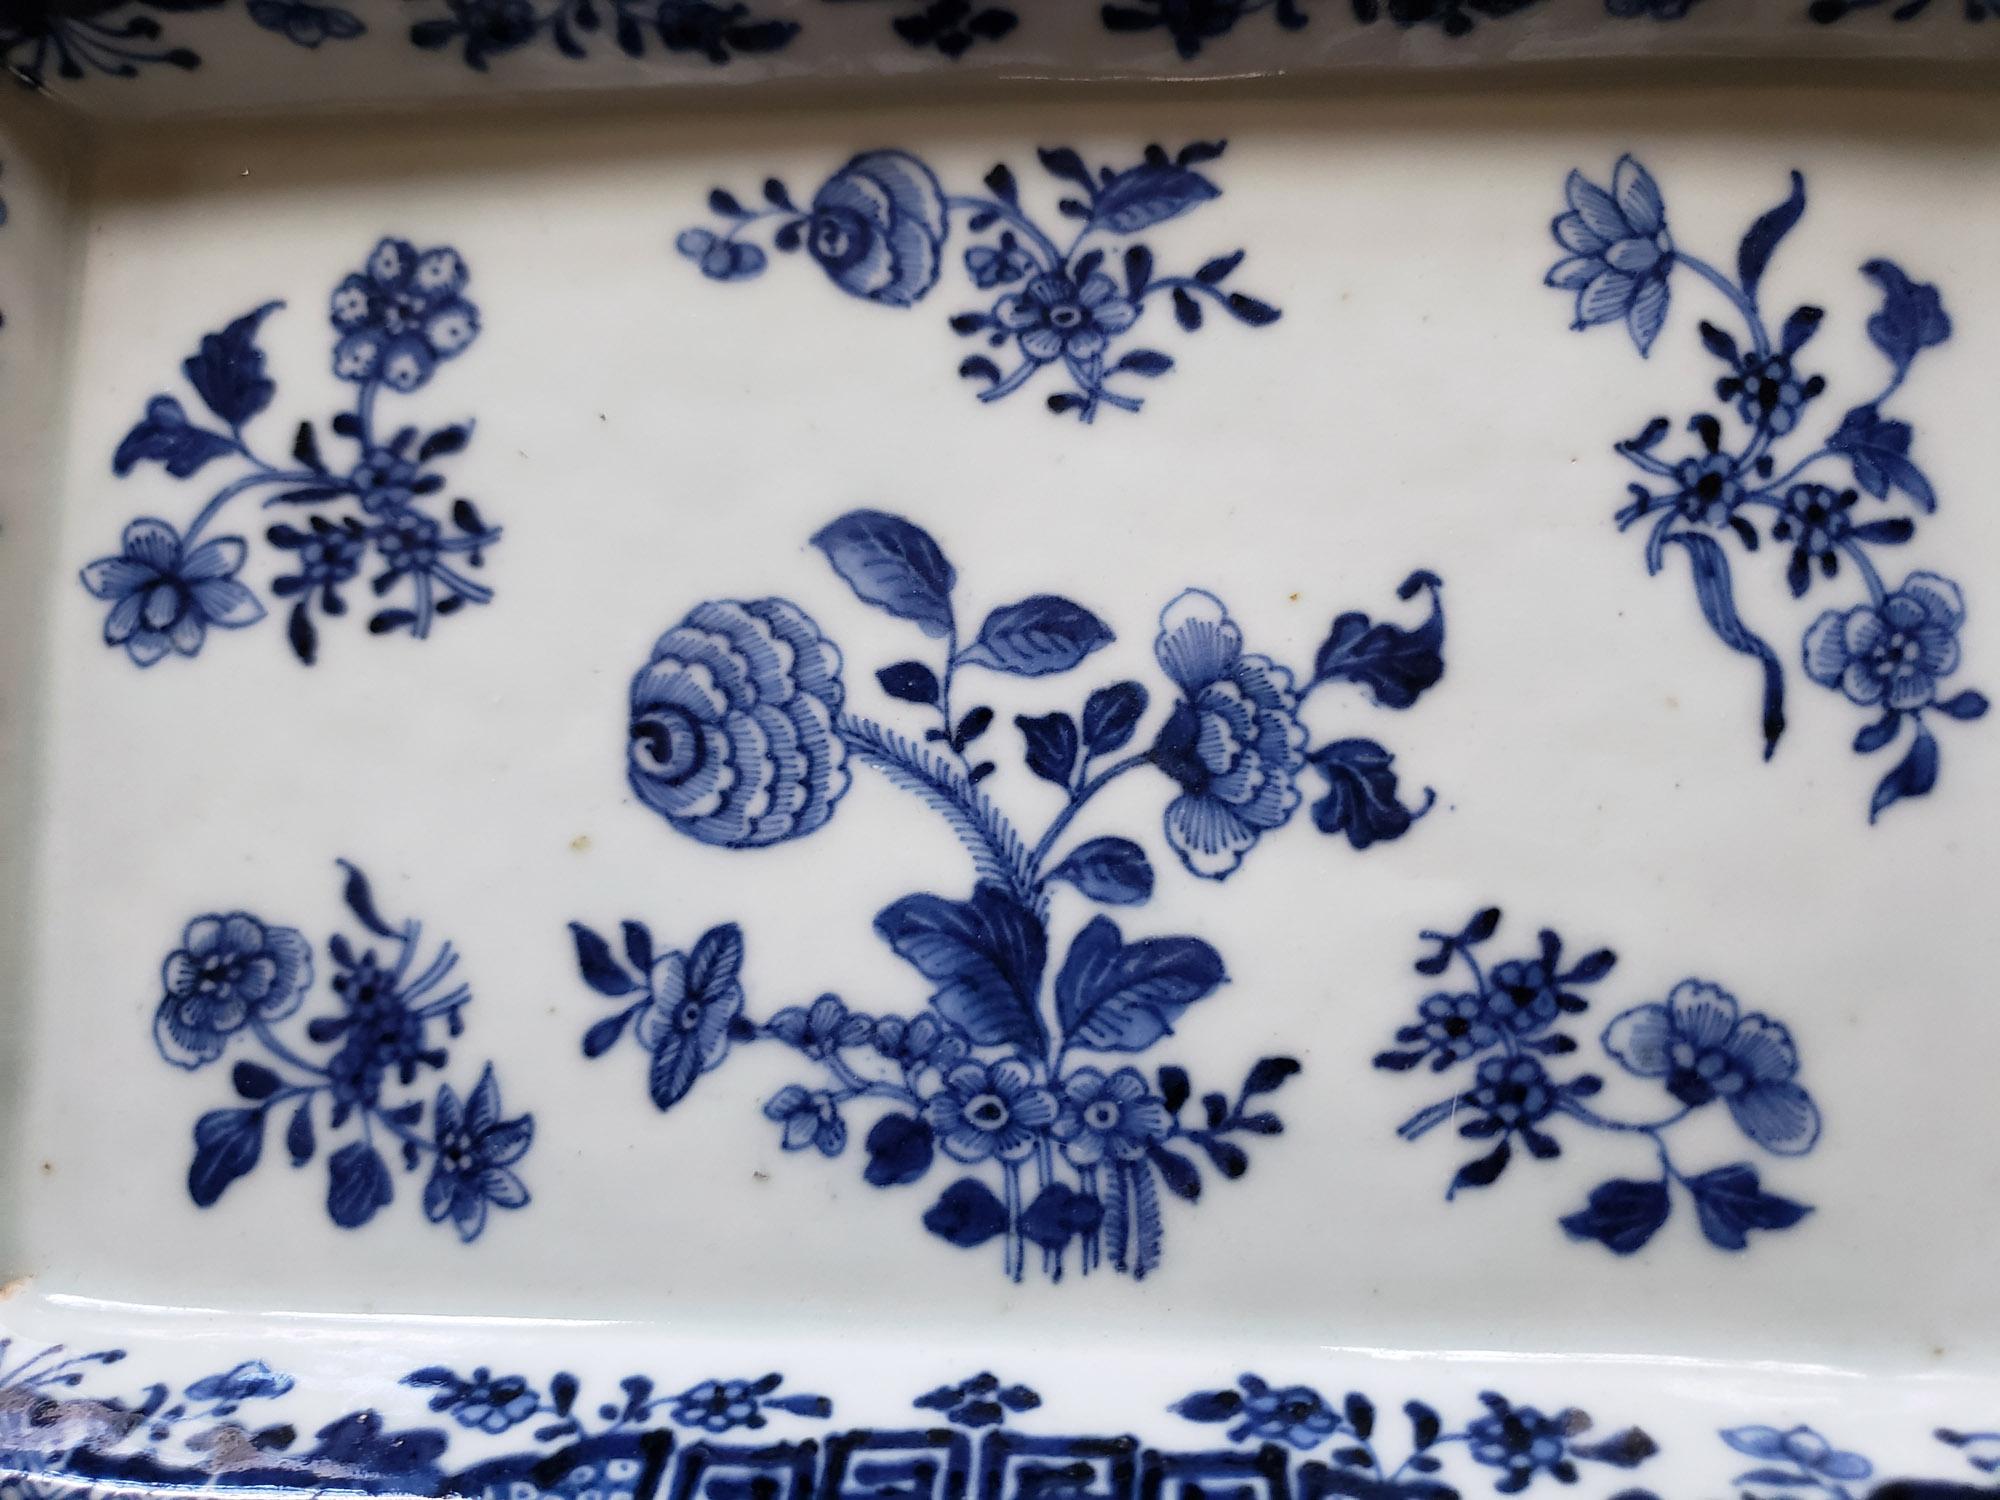 Chinese Export Porcelain Underglaze Blue & White Rectangular Botanical Dishes 5